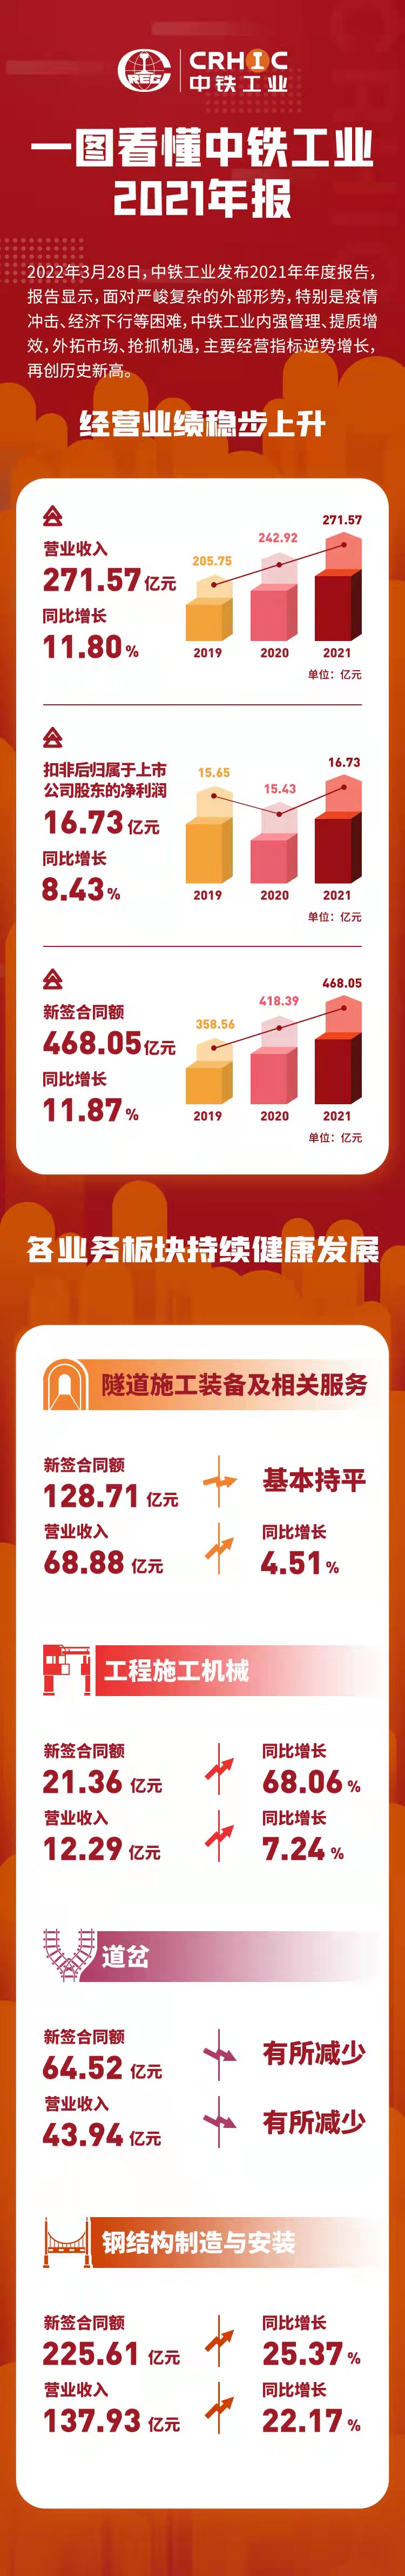 一图看懂中铁工业2021年报